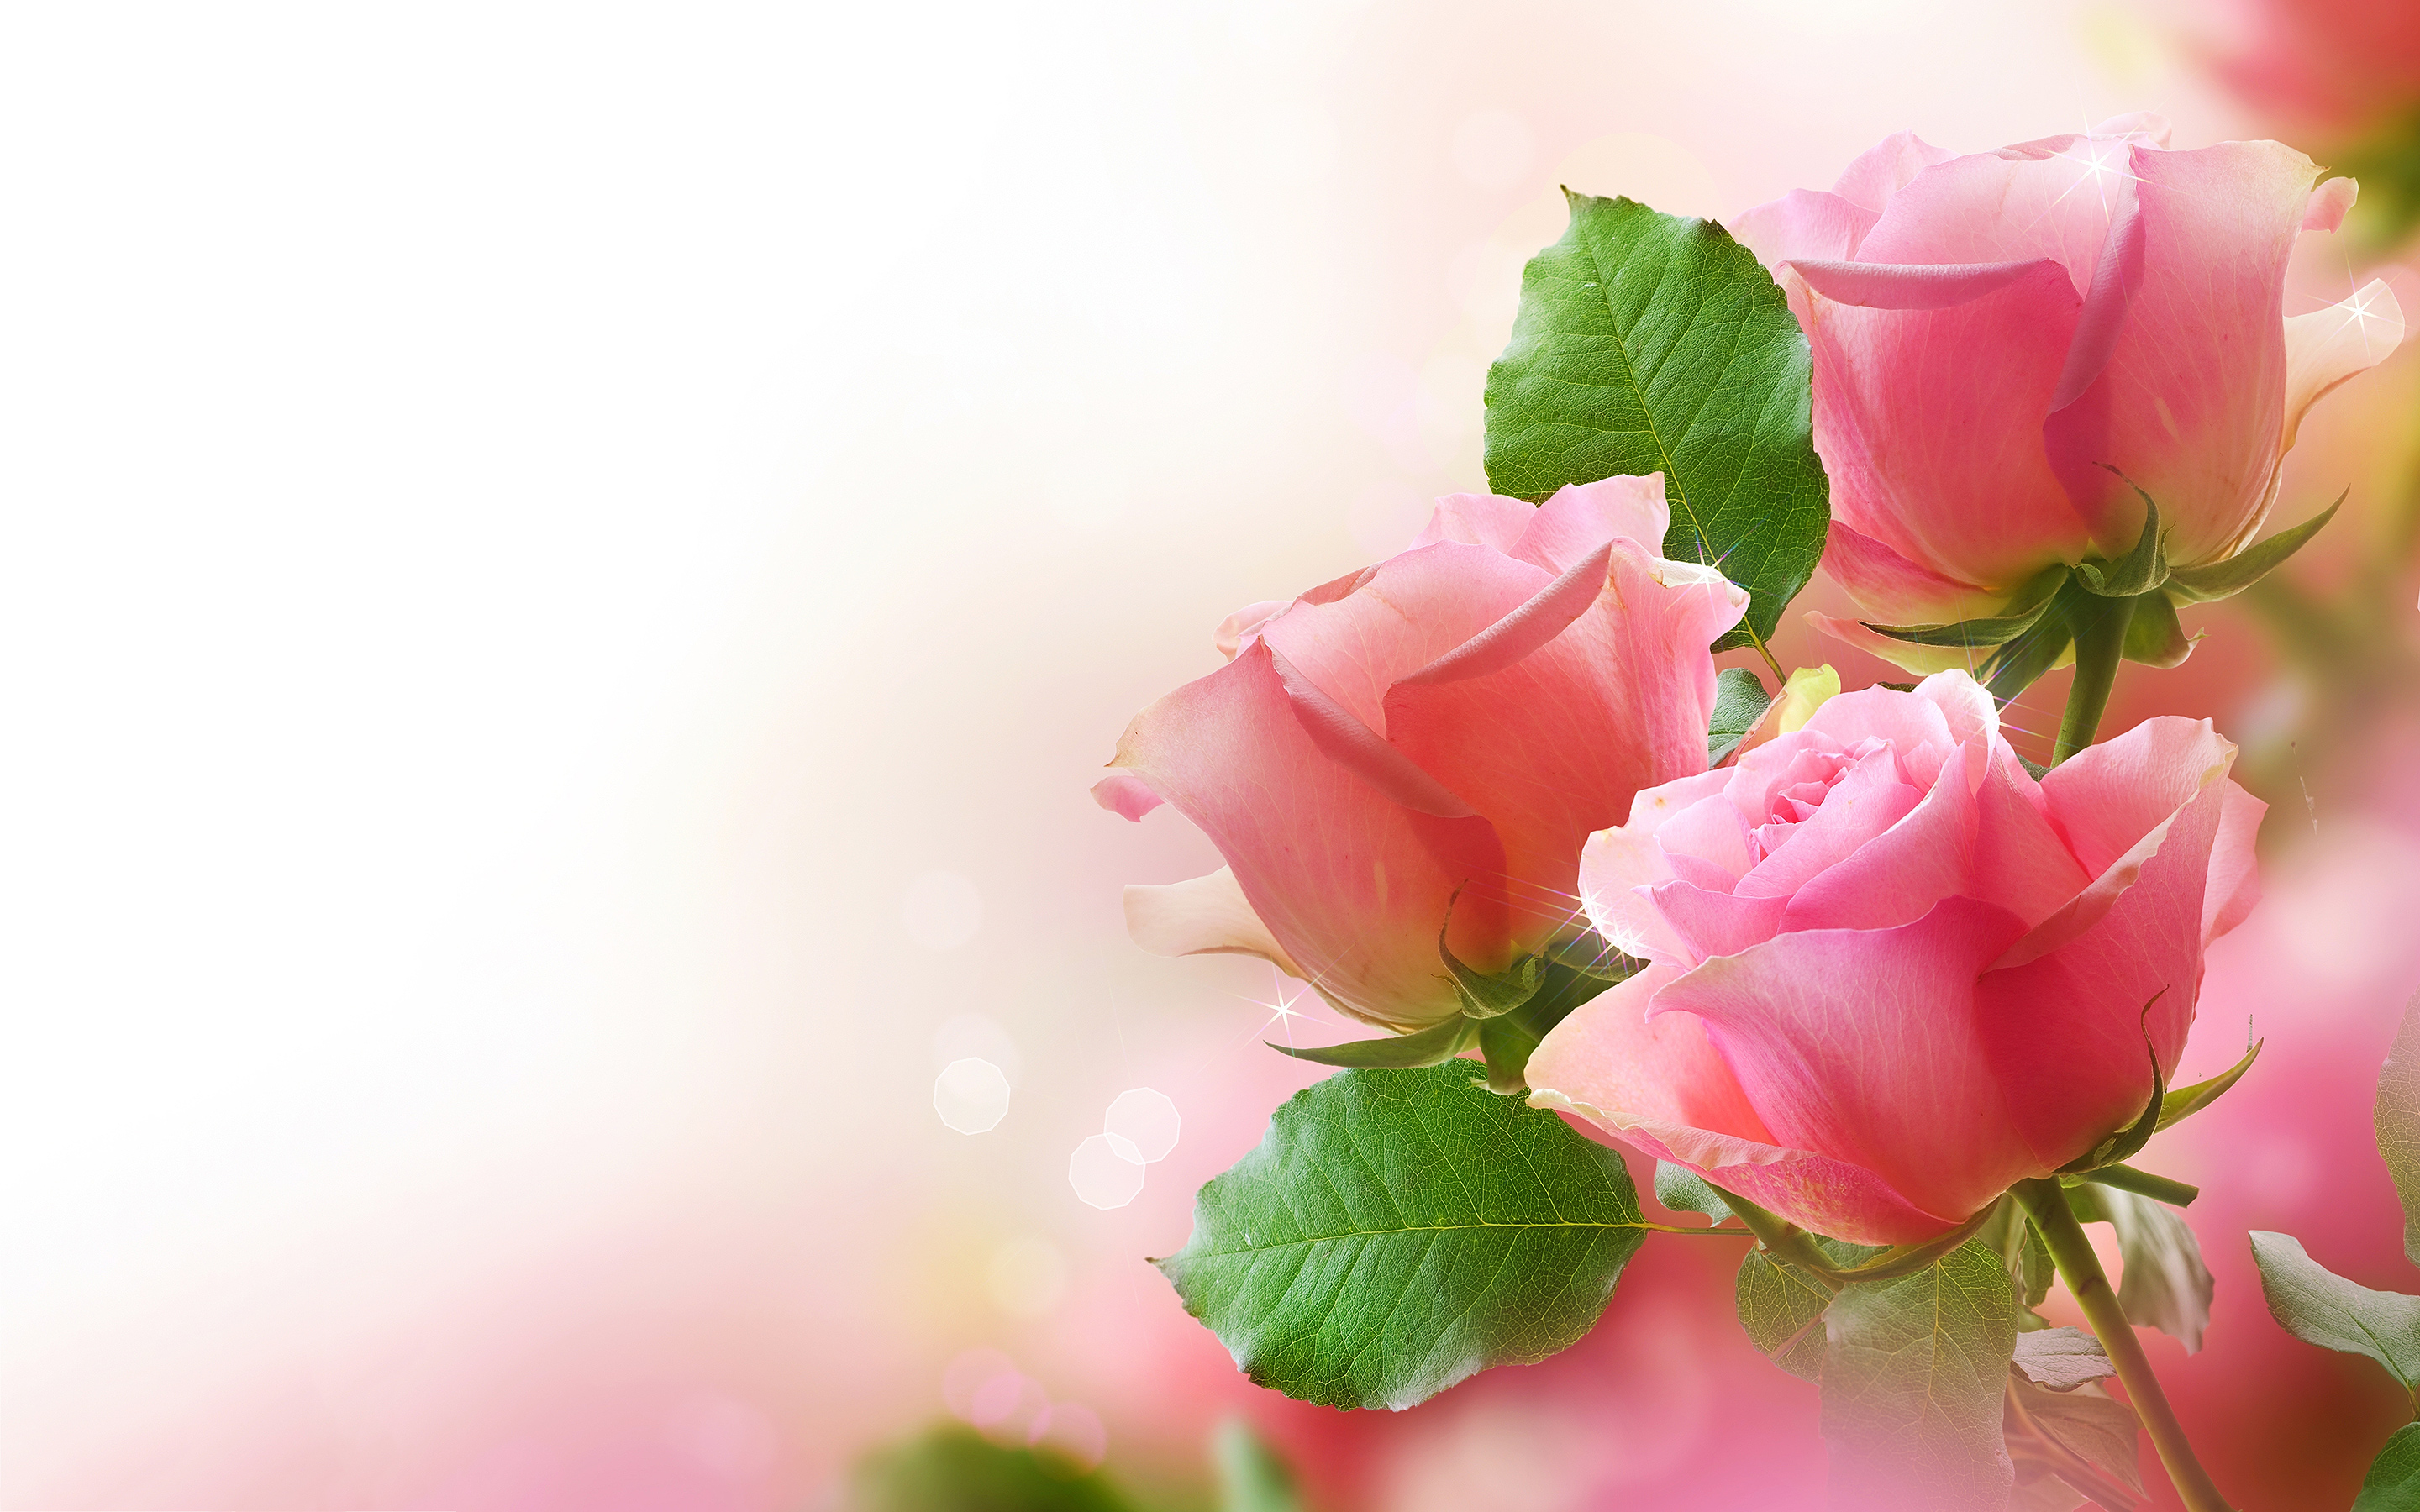 Cute Pink Roses Wallpaper Full HD For Desktop